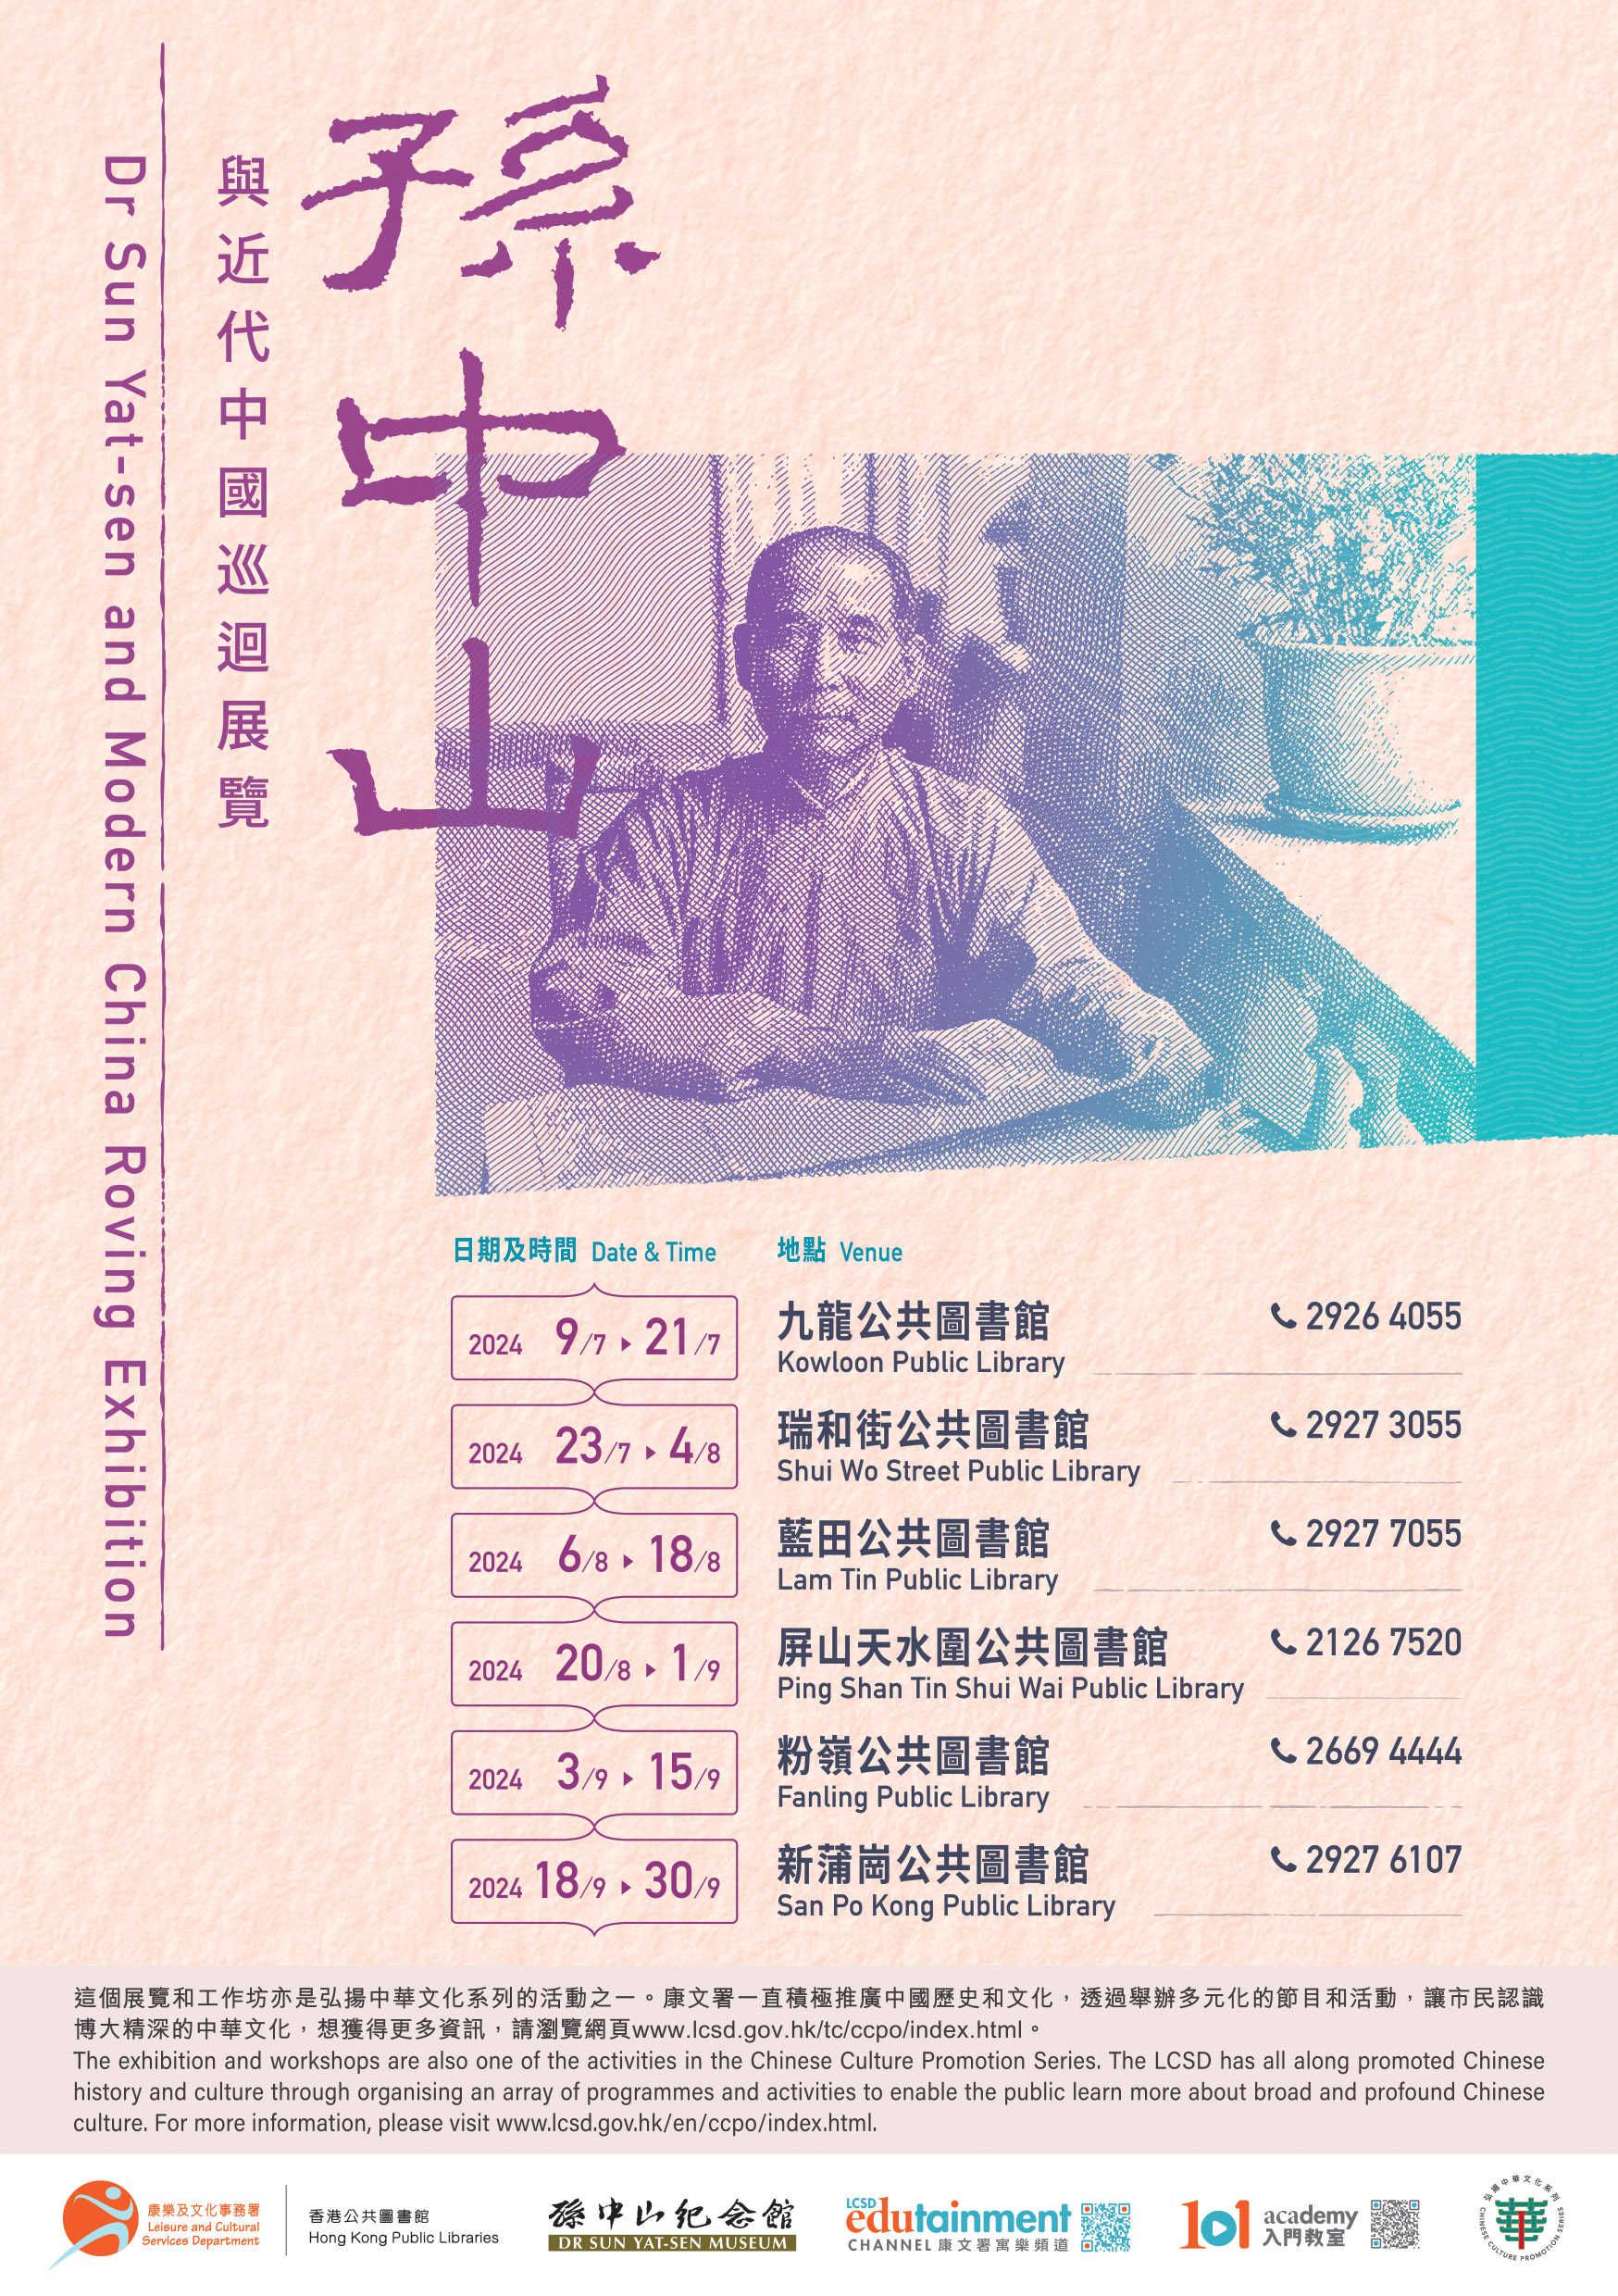 「孙中山与近代中国」巡回展览 